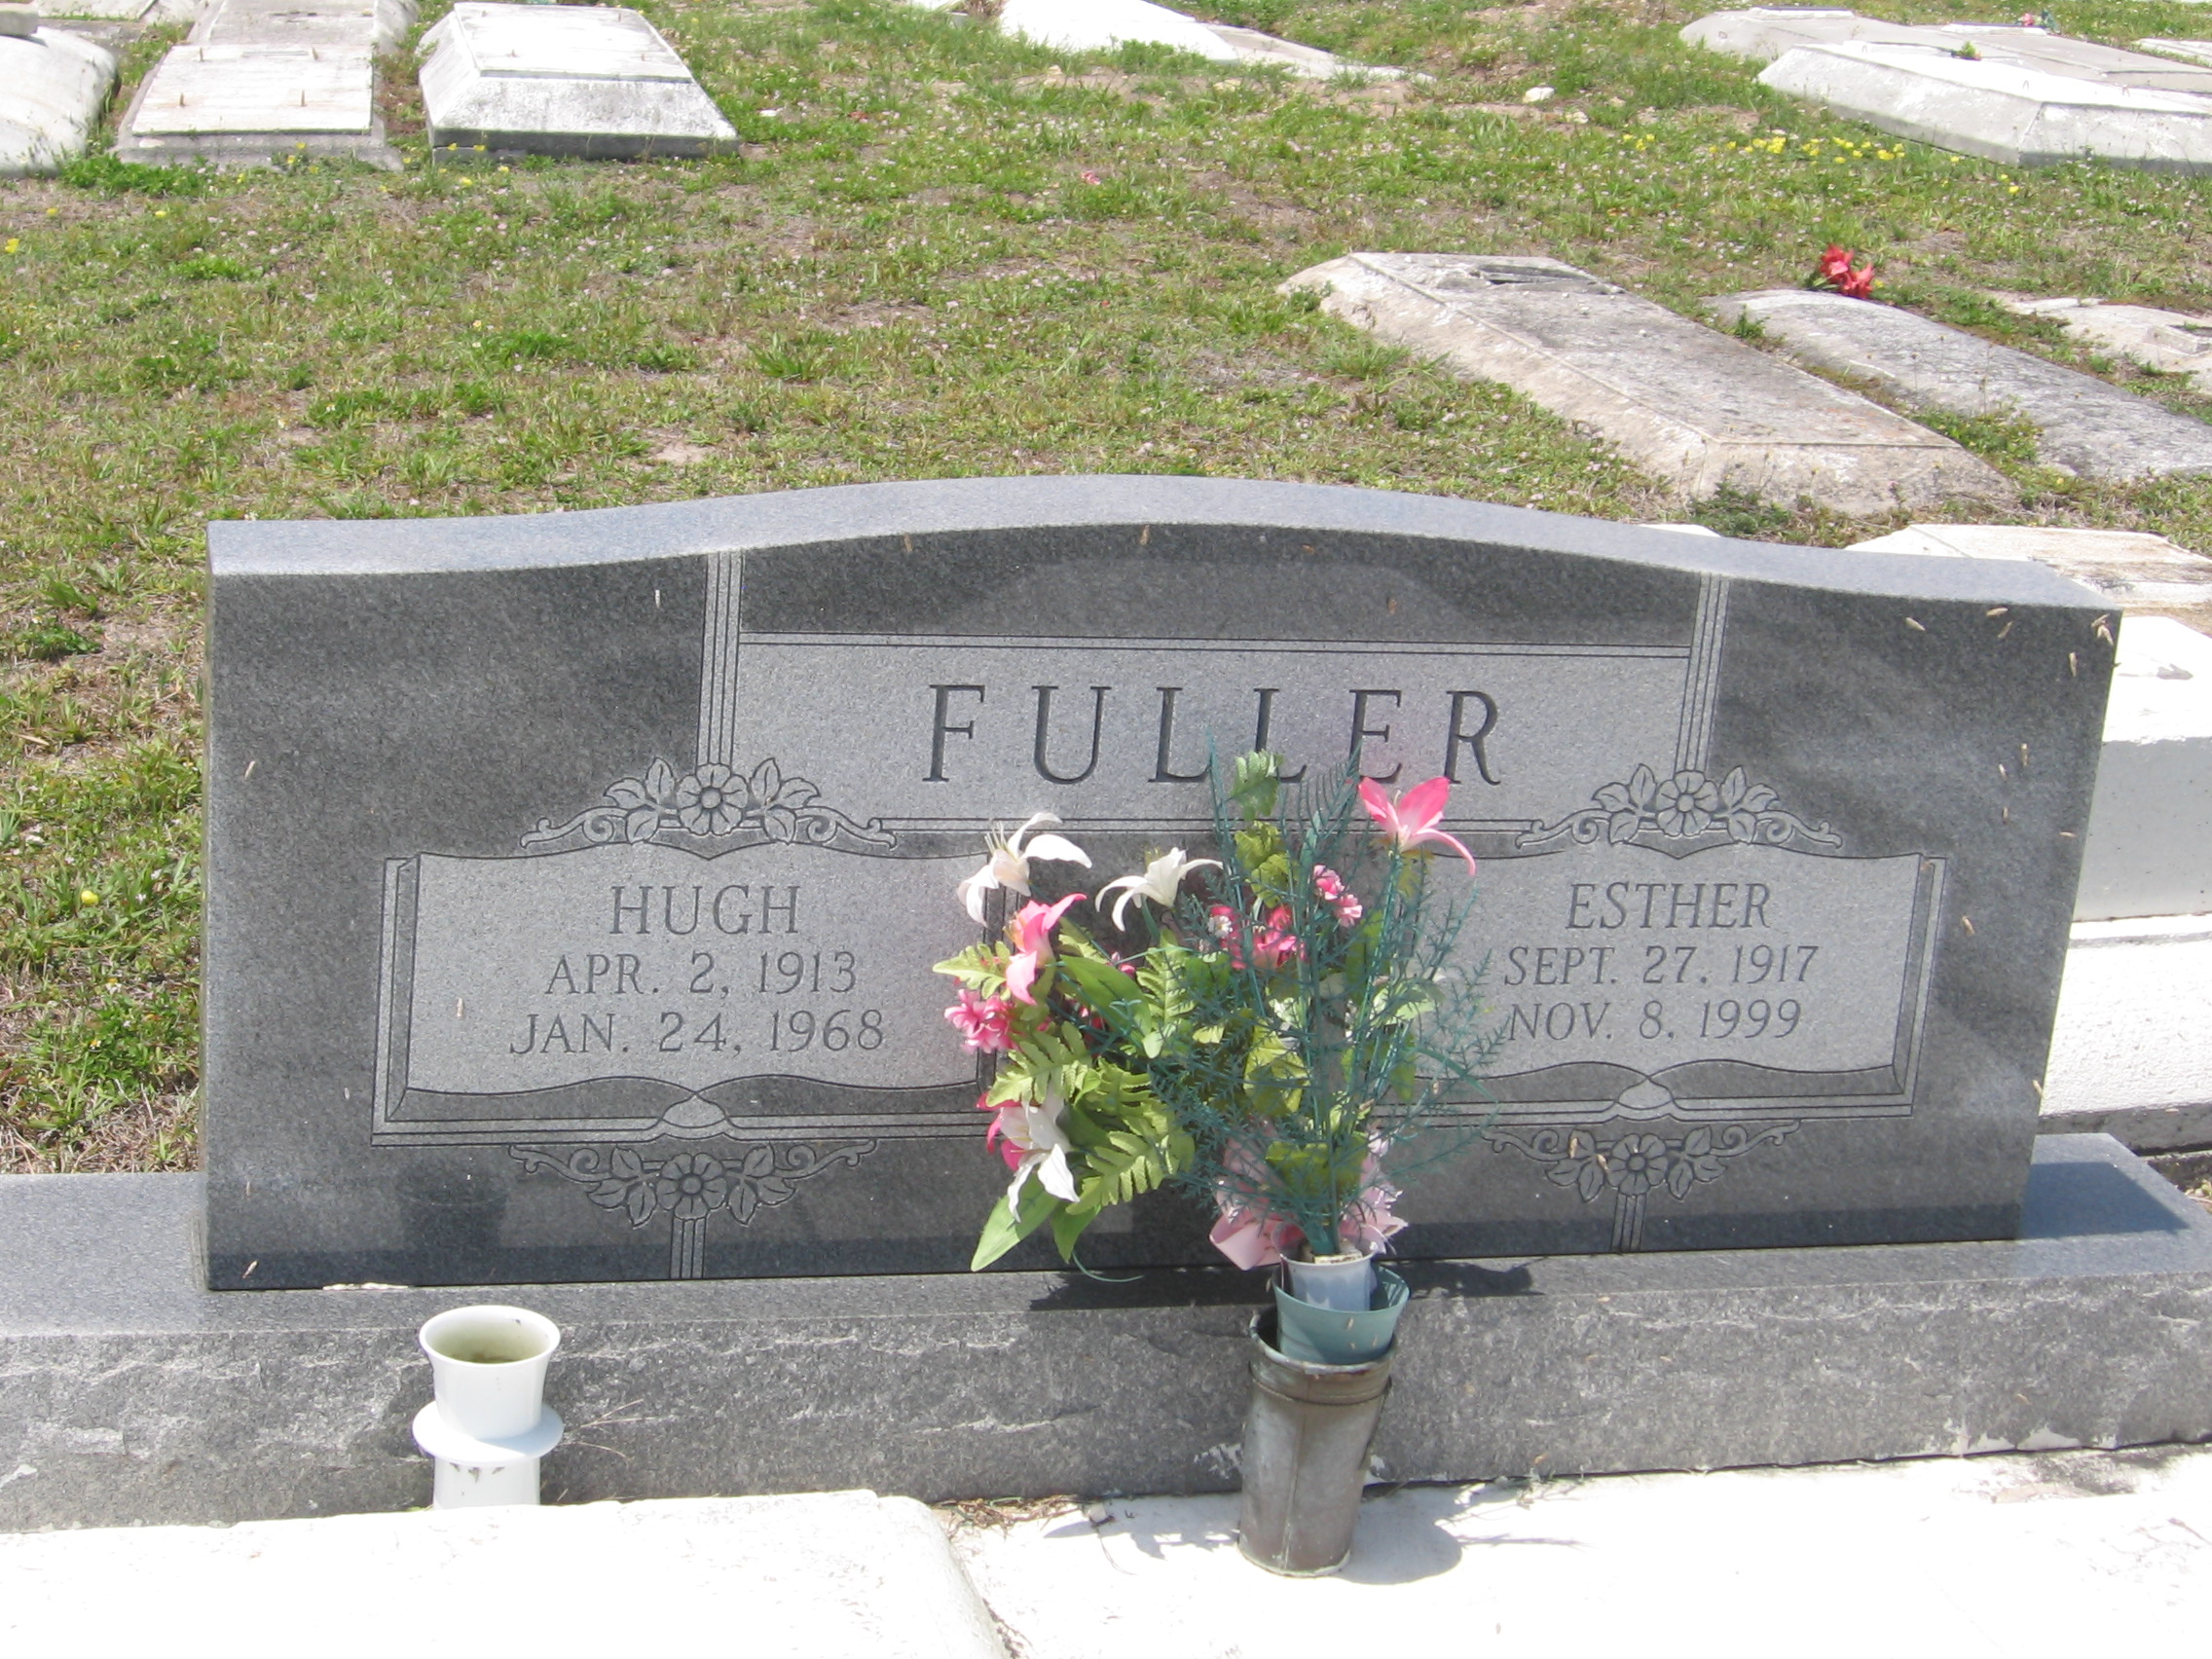 Hugh Fuller